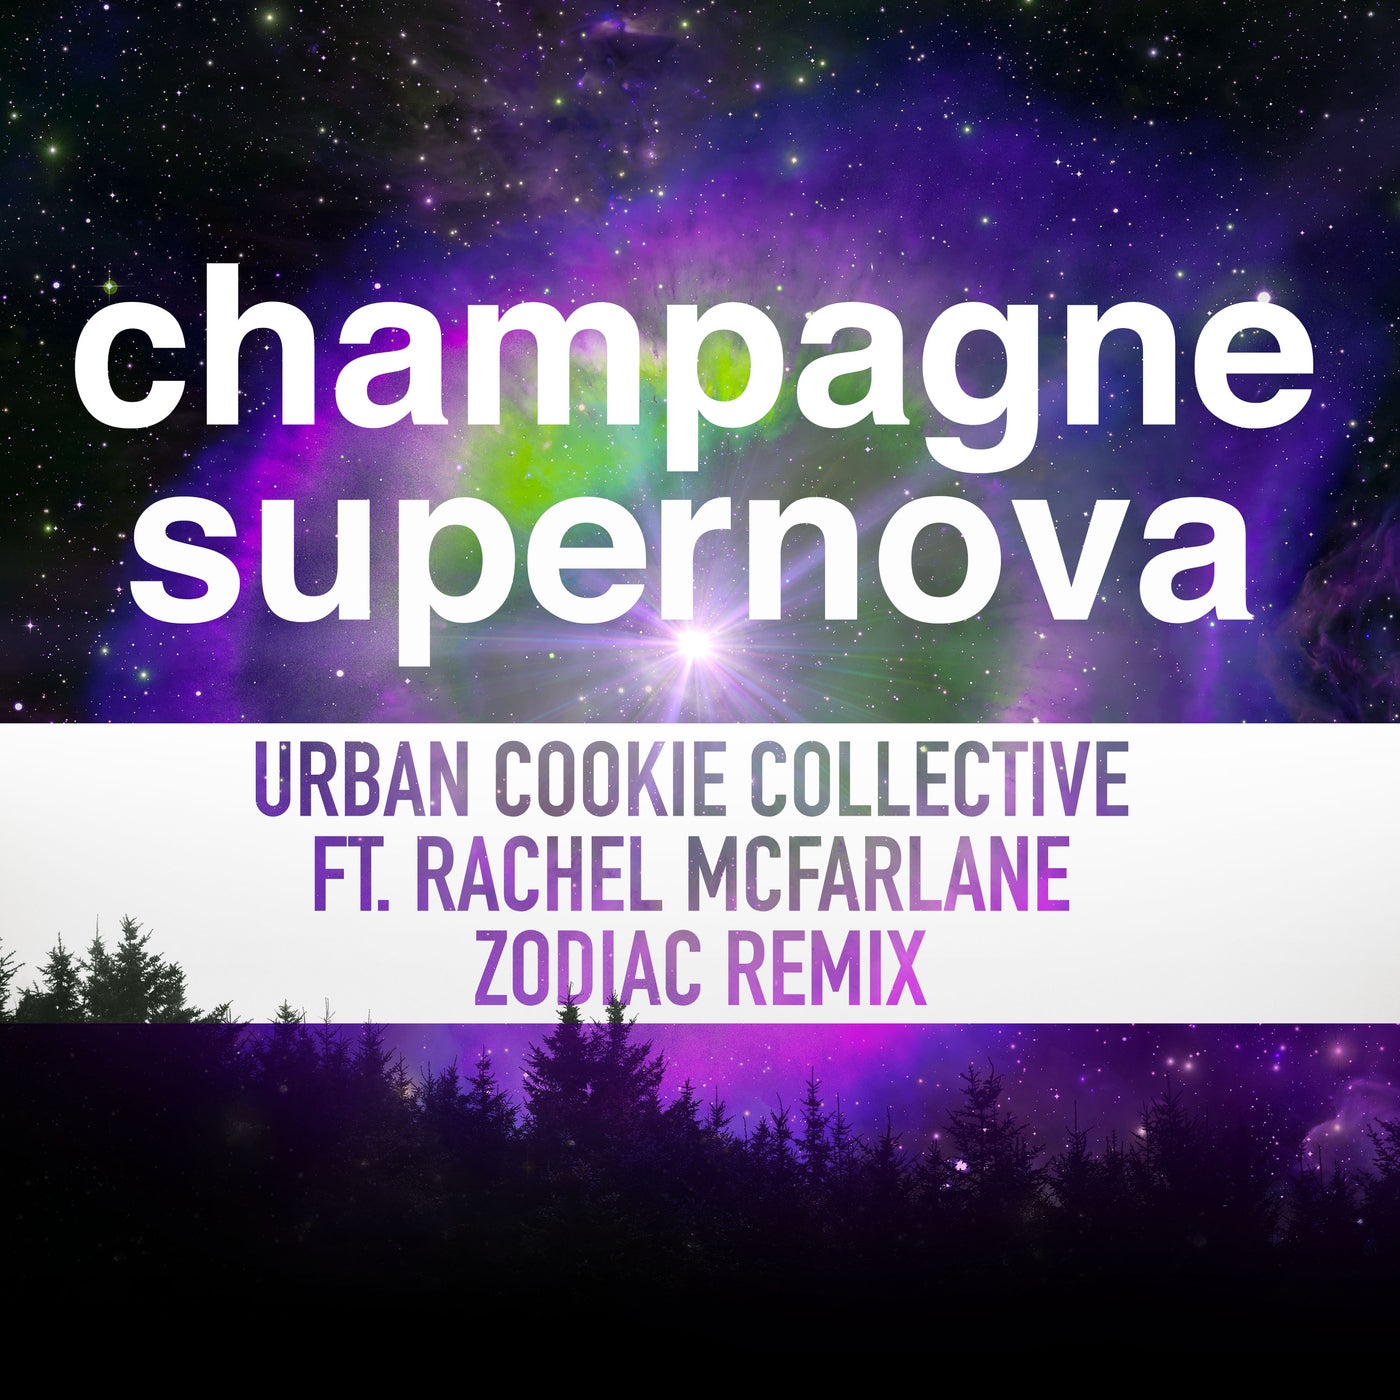 Champagne Supernova (Zodiac Remix)